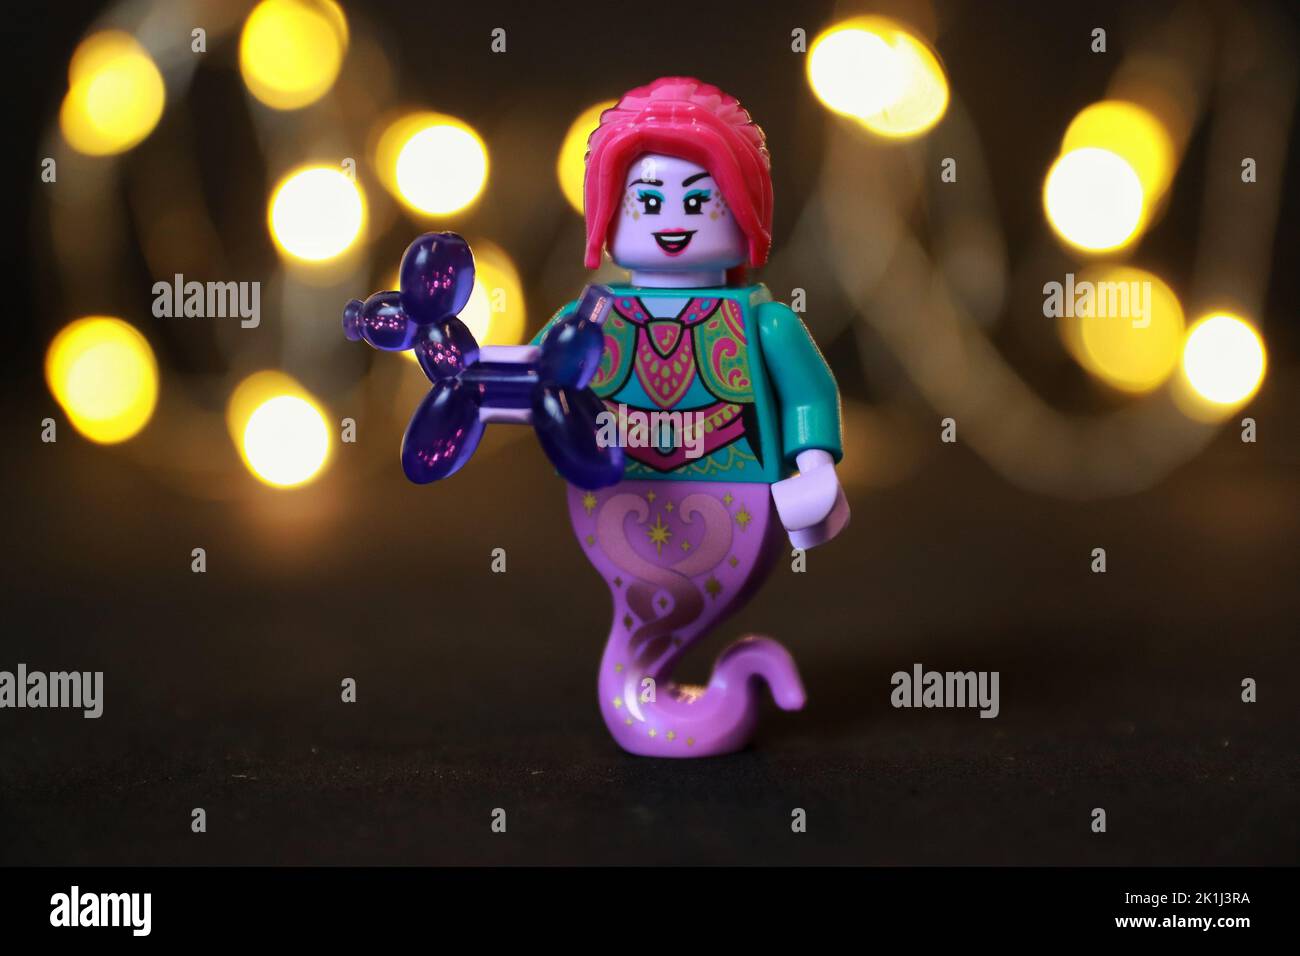 Eine weibliche Spielzeugfigur mit roten Haaren und Lippen, die ein violettes Ballontier hält Stockfoto